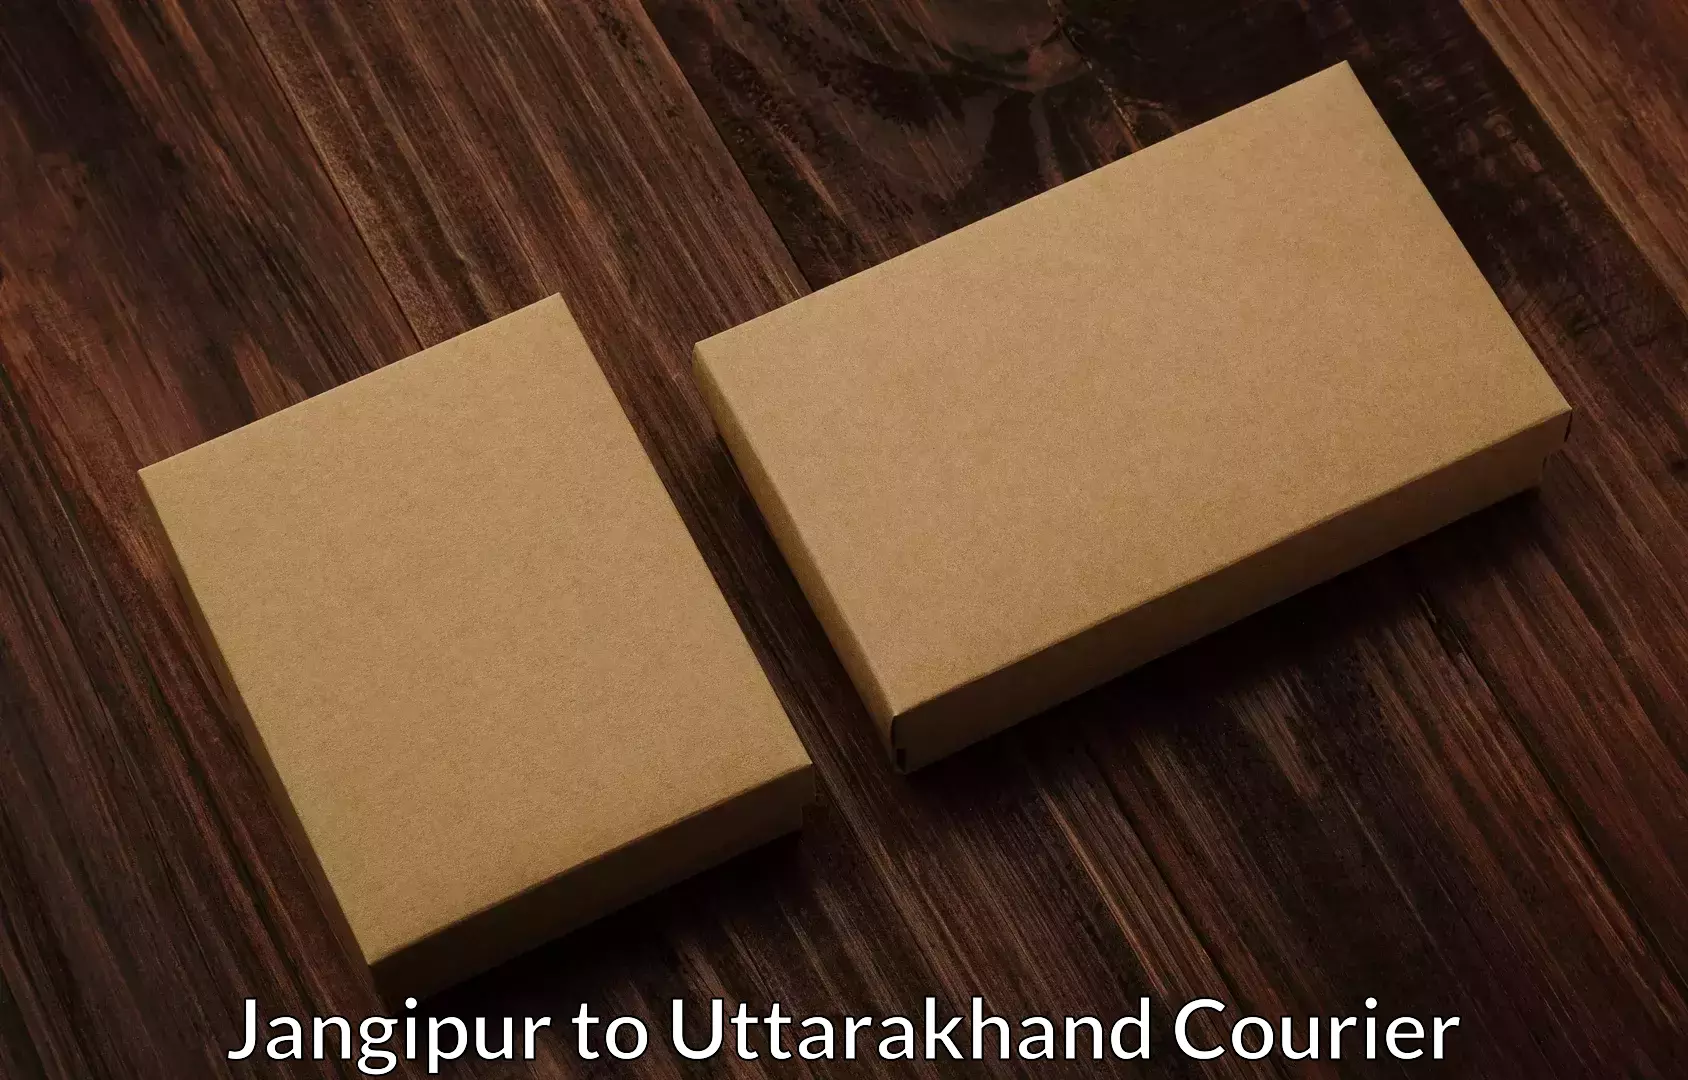 Personalized moving service Jangipur to Uttarakhand